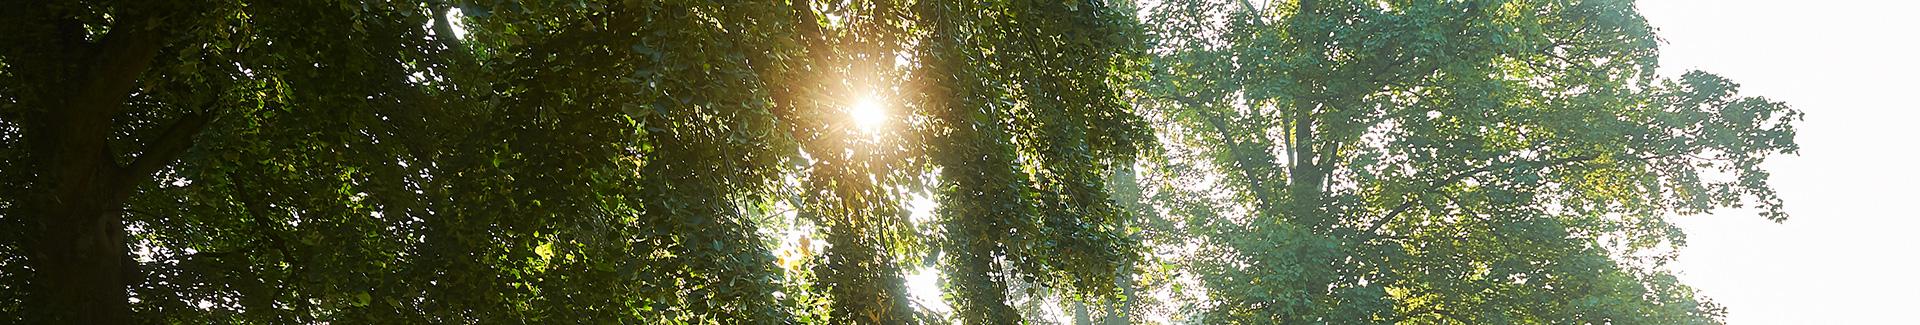 Bannière de la page Environnement - Rai de soleil dans les arbres